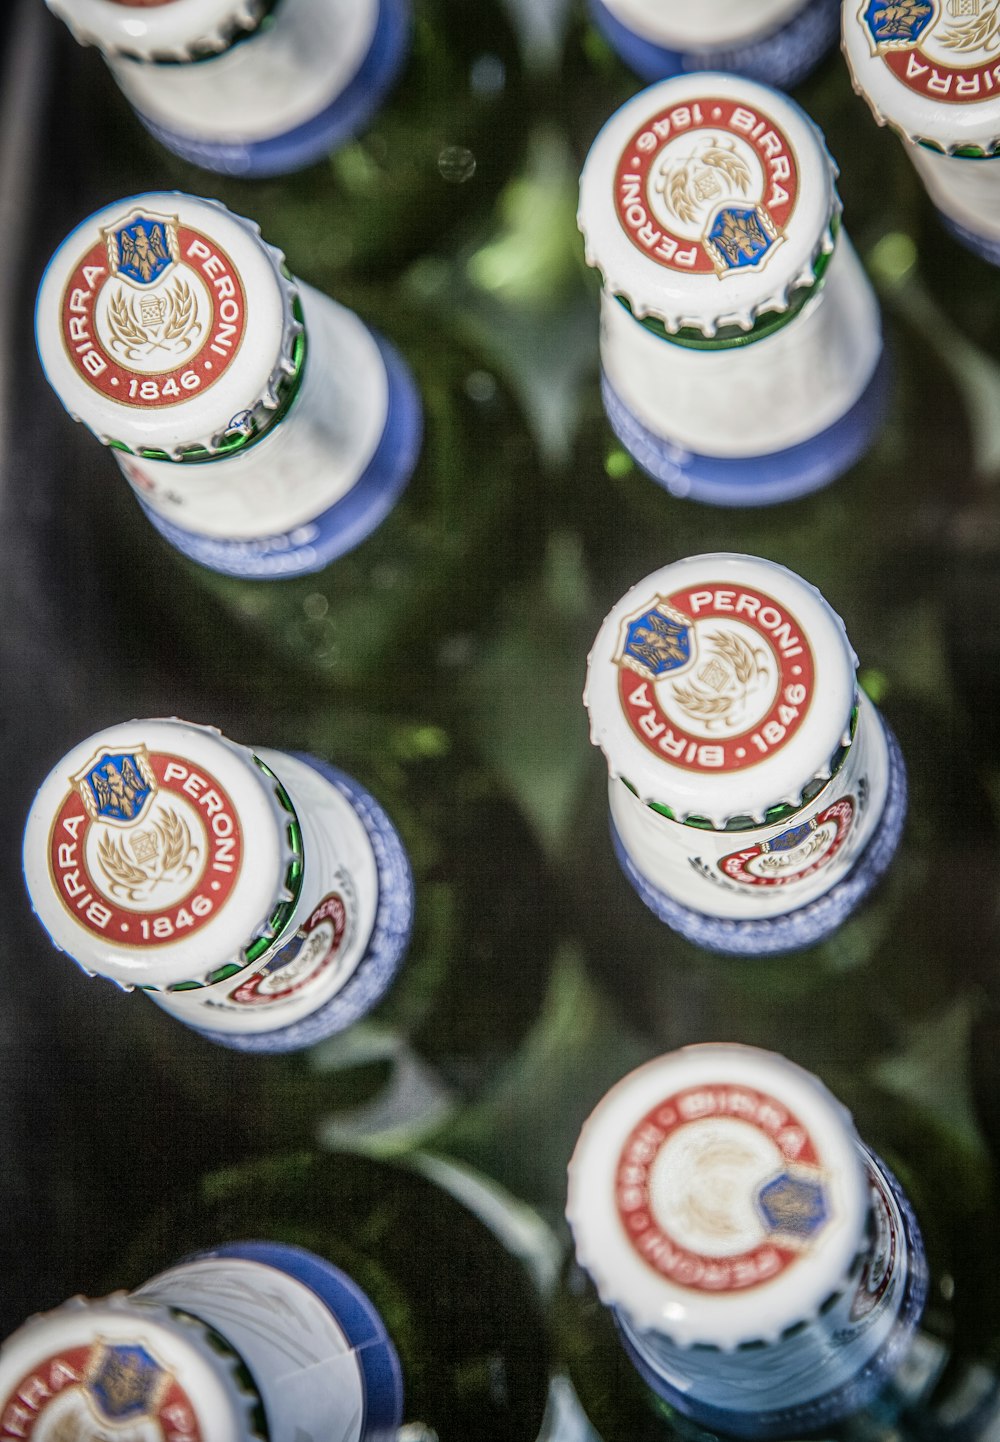 Coronas de botellas de bebidas Peroni Birra